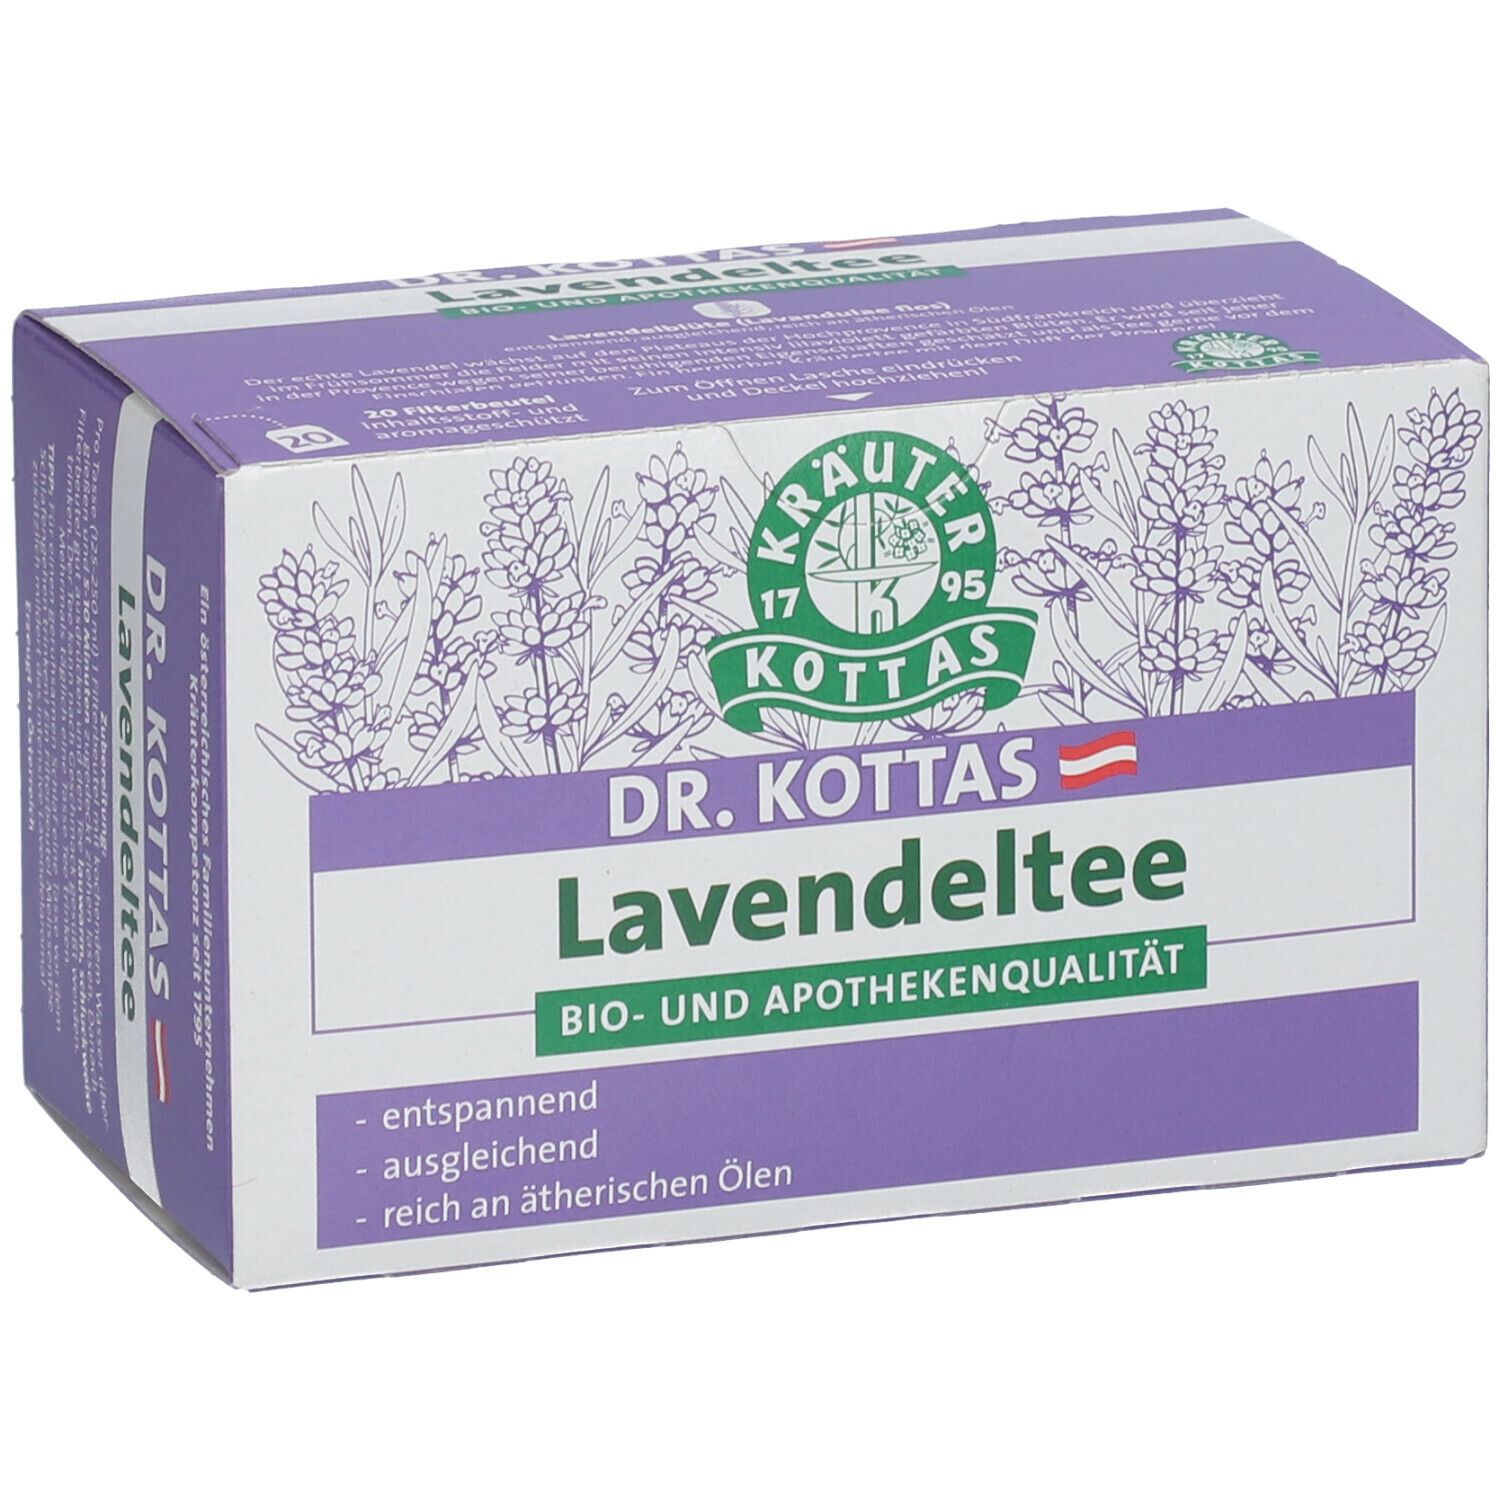 DR. KOTTAS Lavendeltee